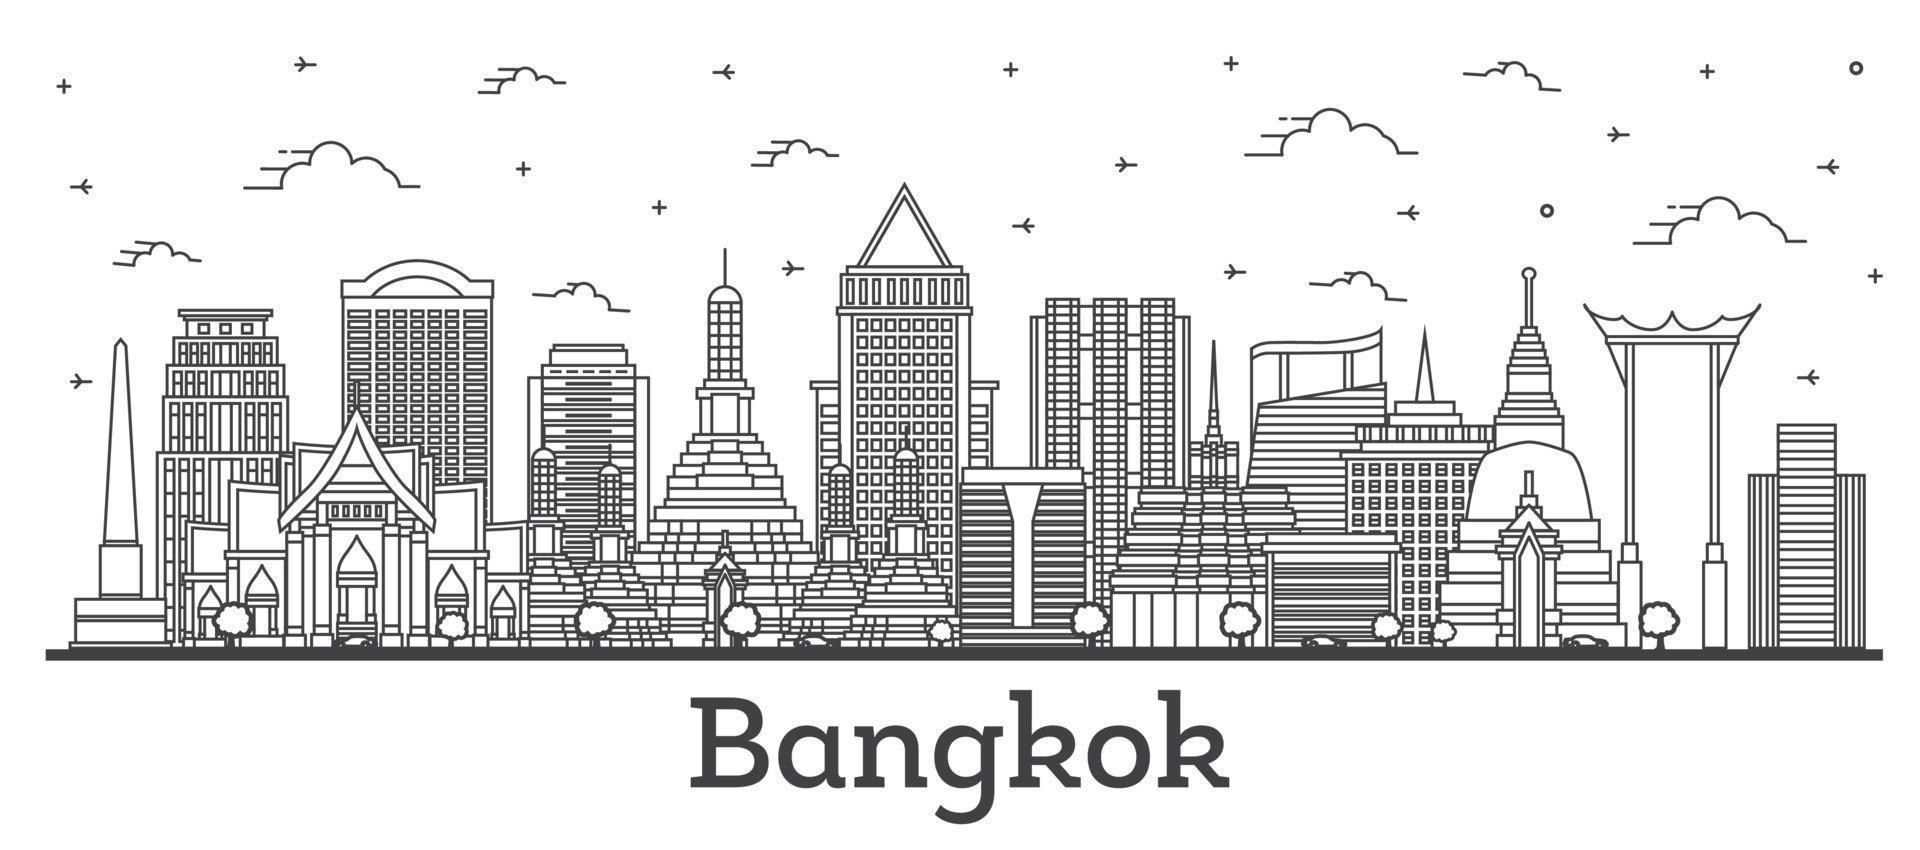 contour de la ville de bangkok en thaïlande avec des bâtiments modernes et historiques isolés sur blanc. vecteur